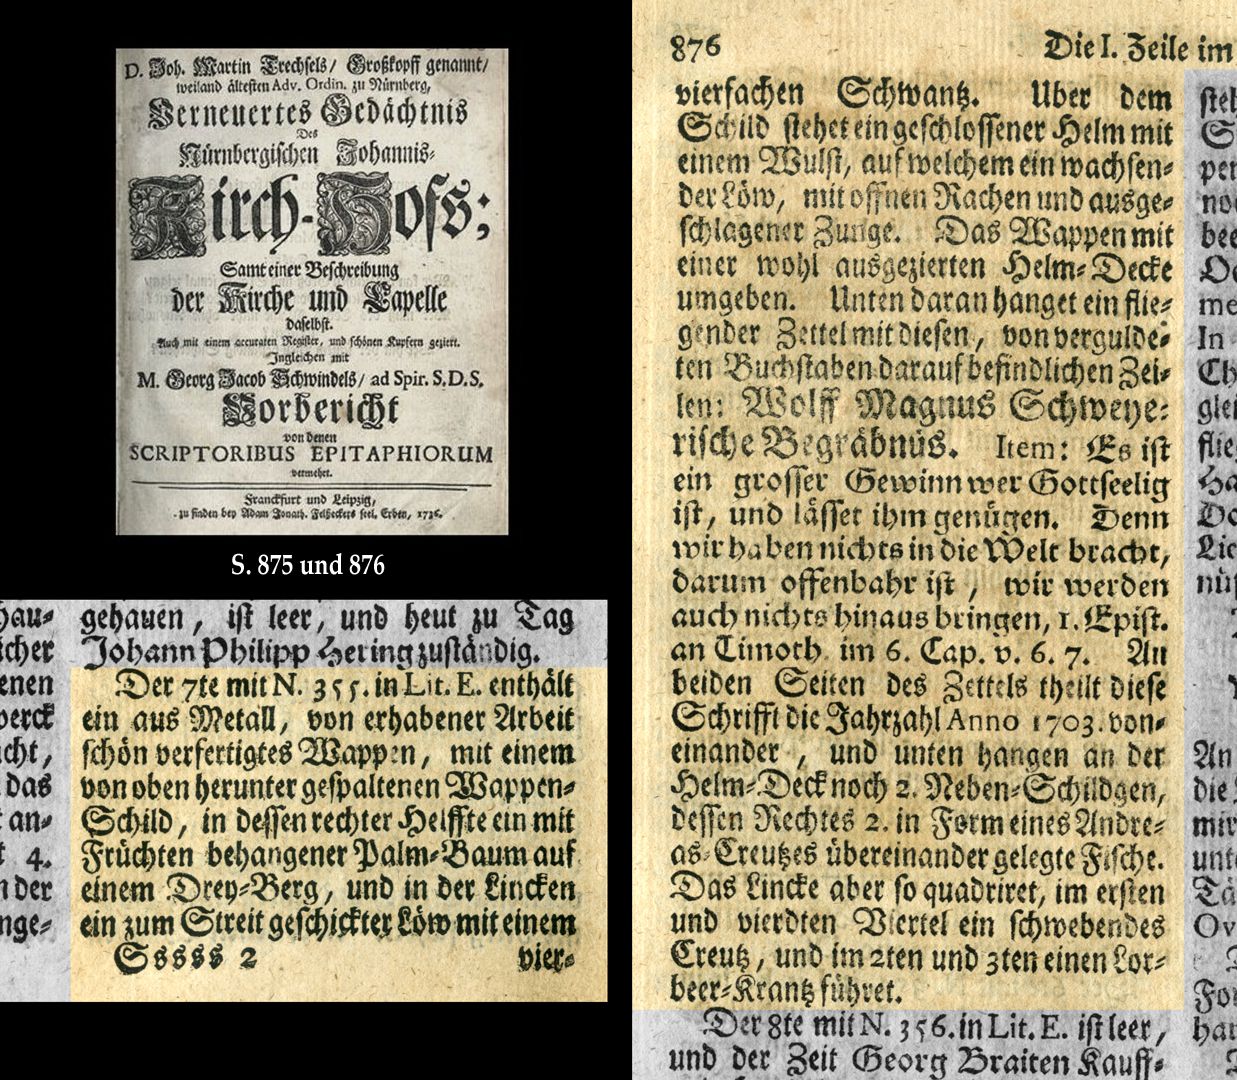 Epitaph des Wolf Magnus Schweyer Auszug aus Joh. Martin Trechsels, Großkopf genannt: "Verneuertes Gedächtnis des nürnbergischen Johannis Kirch Hof ..." , Franckf. & Leipzig 1735